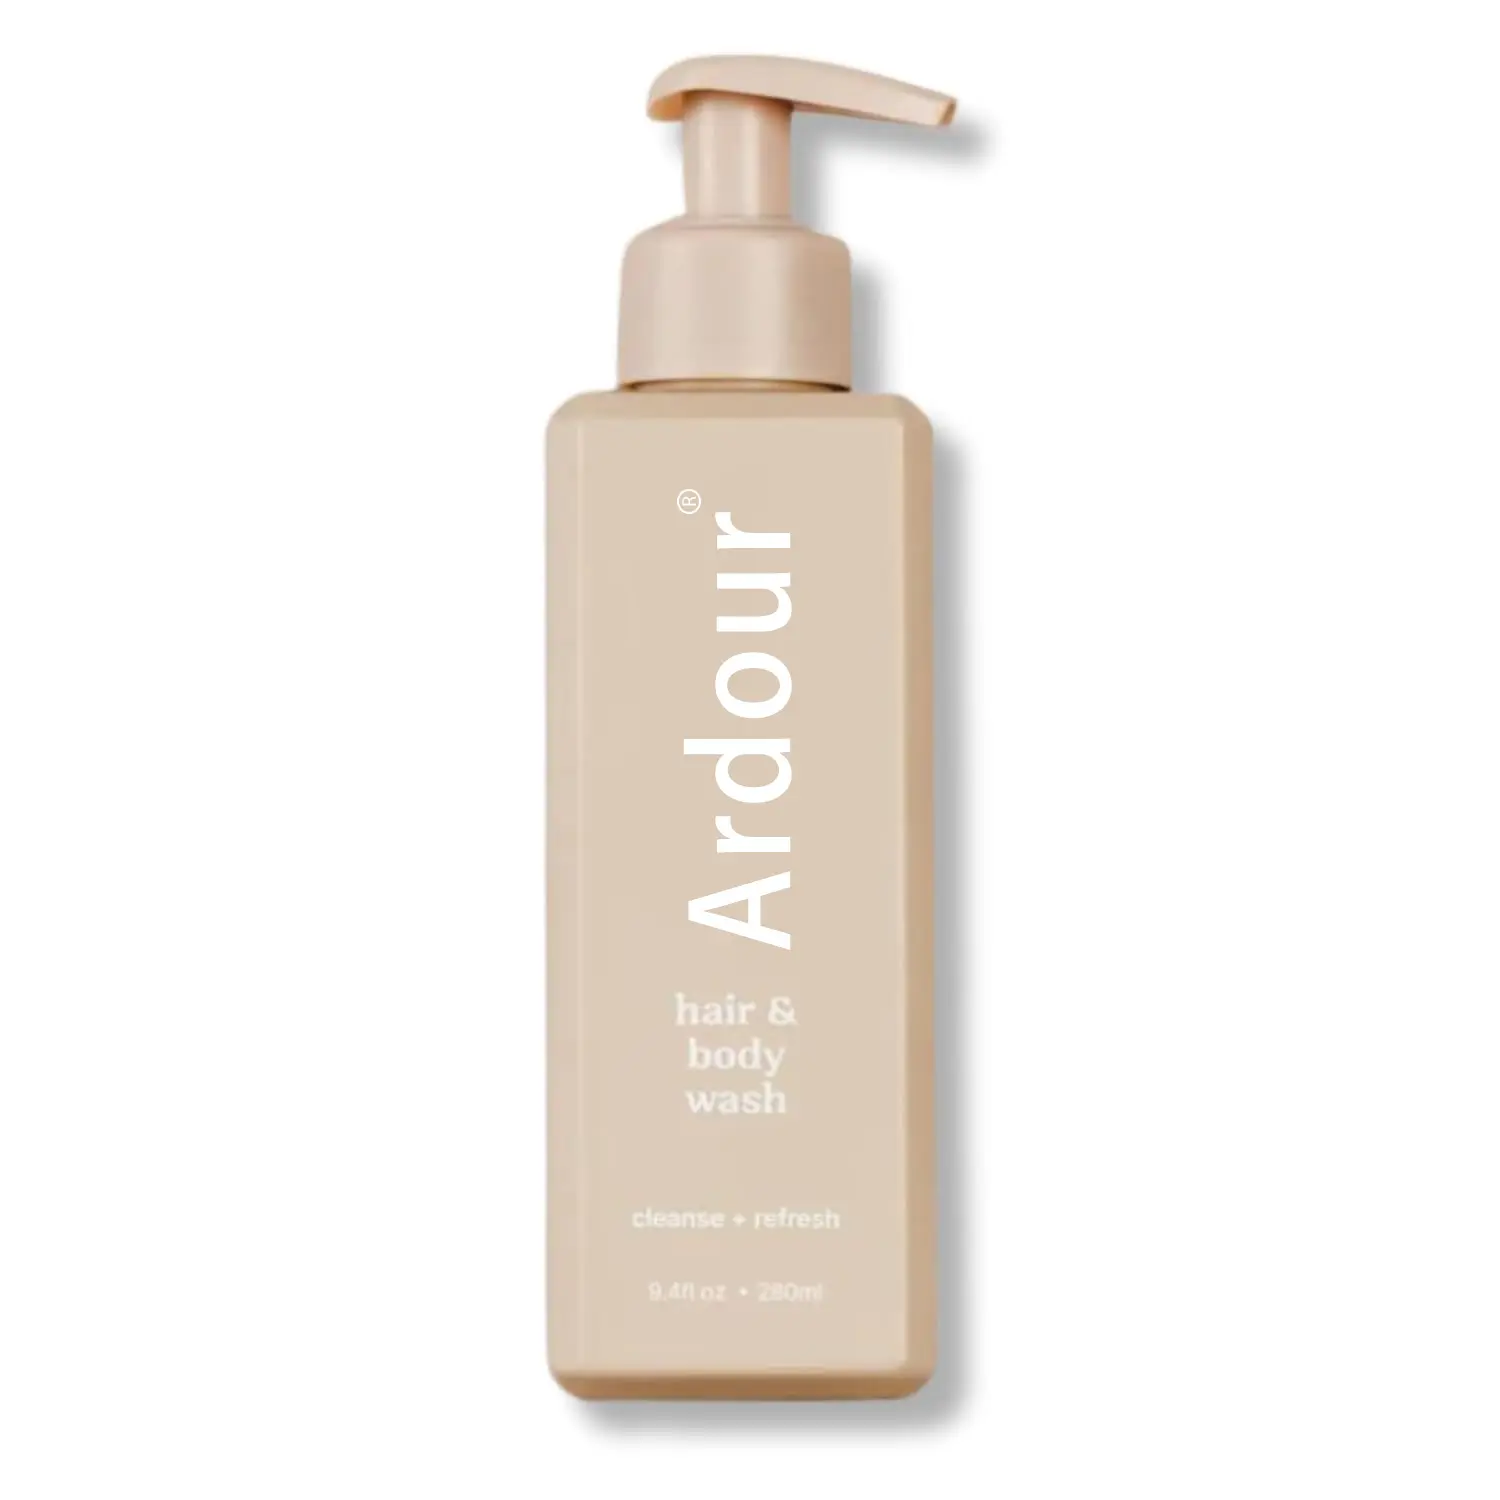 Adequado para pele sensível, shampoo hidratante natural sem fragrância e lavagem corporal, perfume de baunilha, ingredientes limpos e hidratante